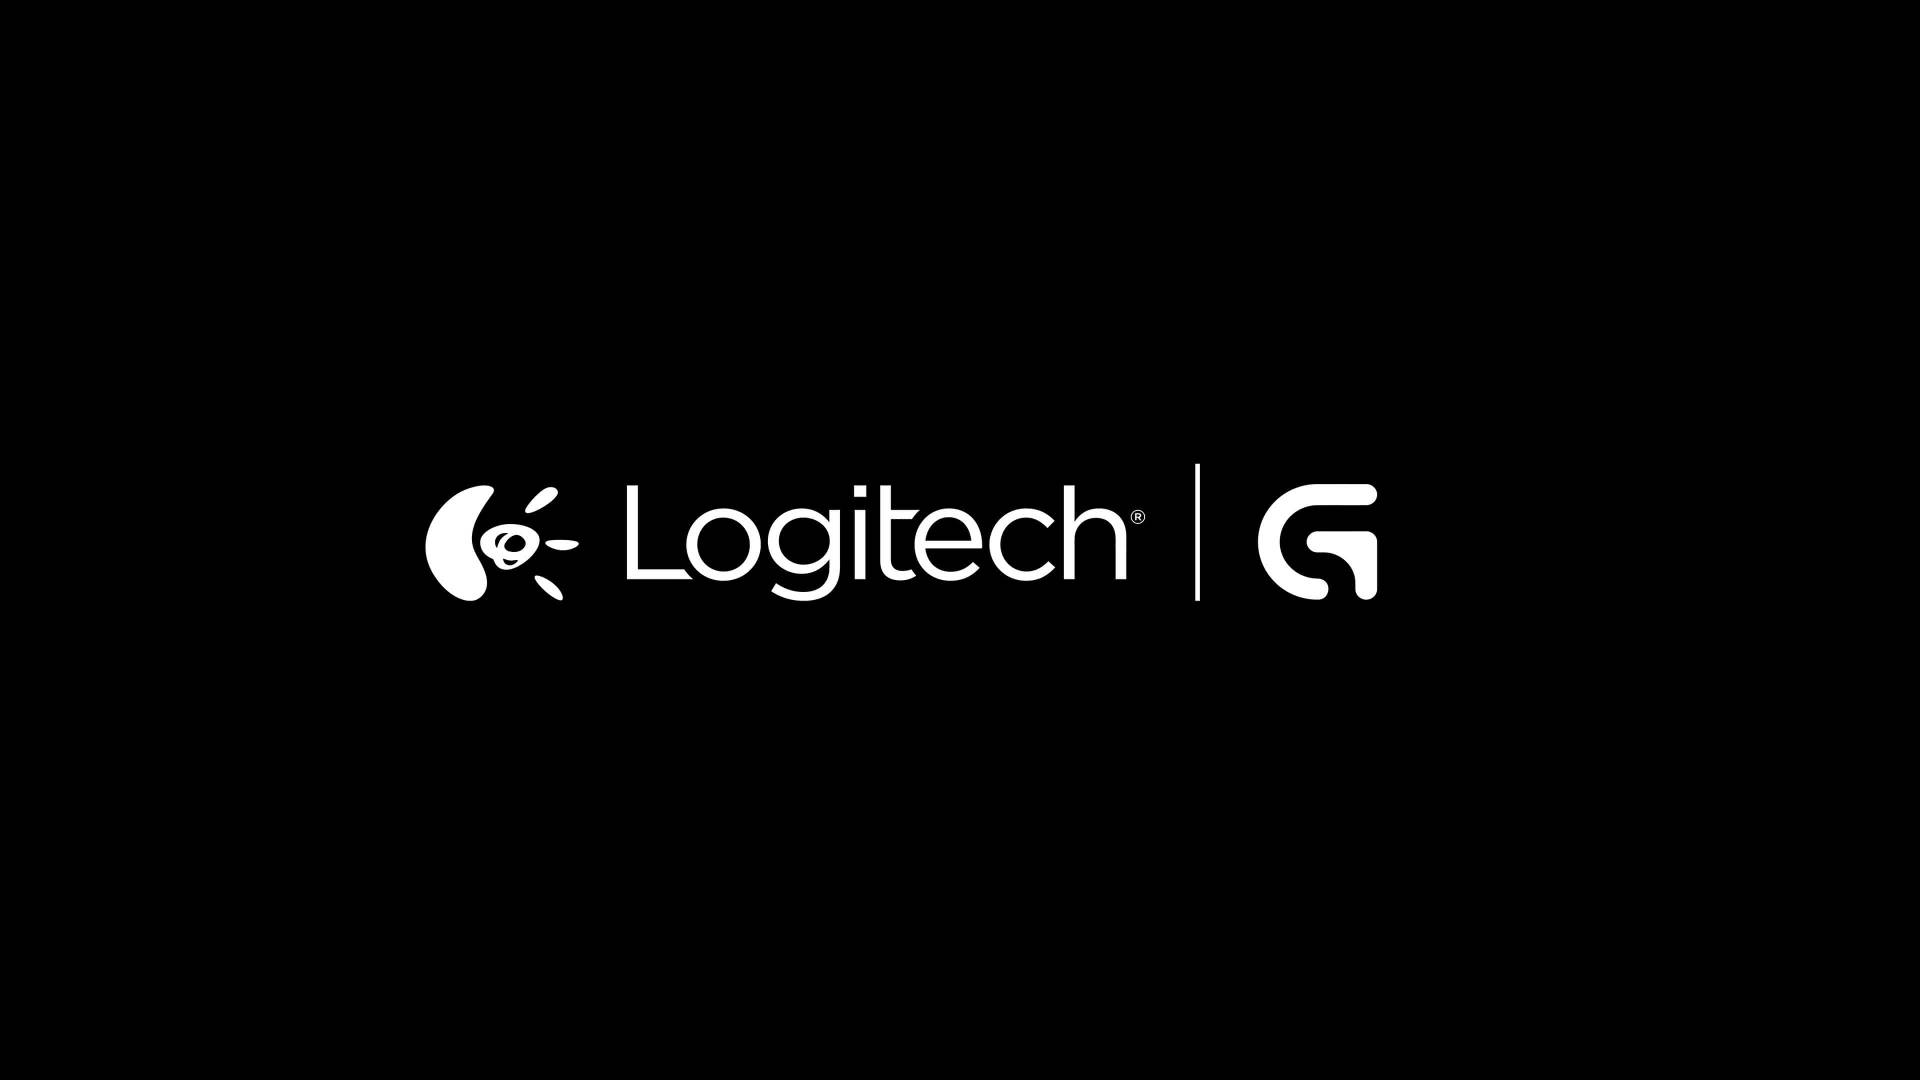 Official Logitech Logos Wallpaper